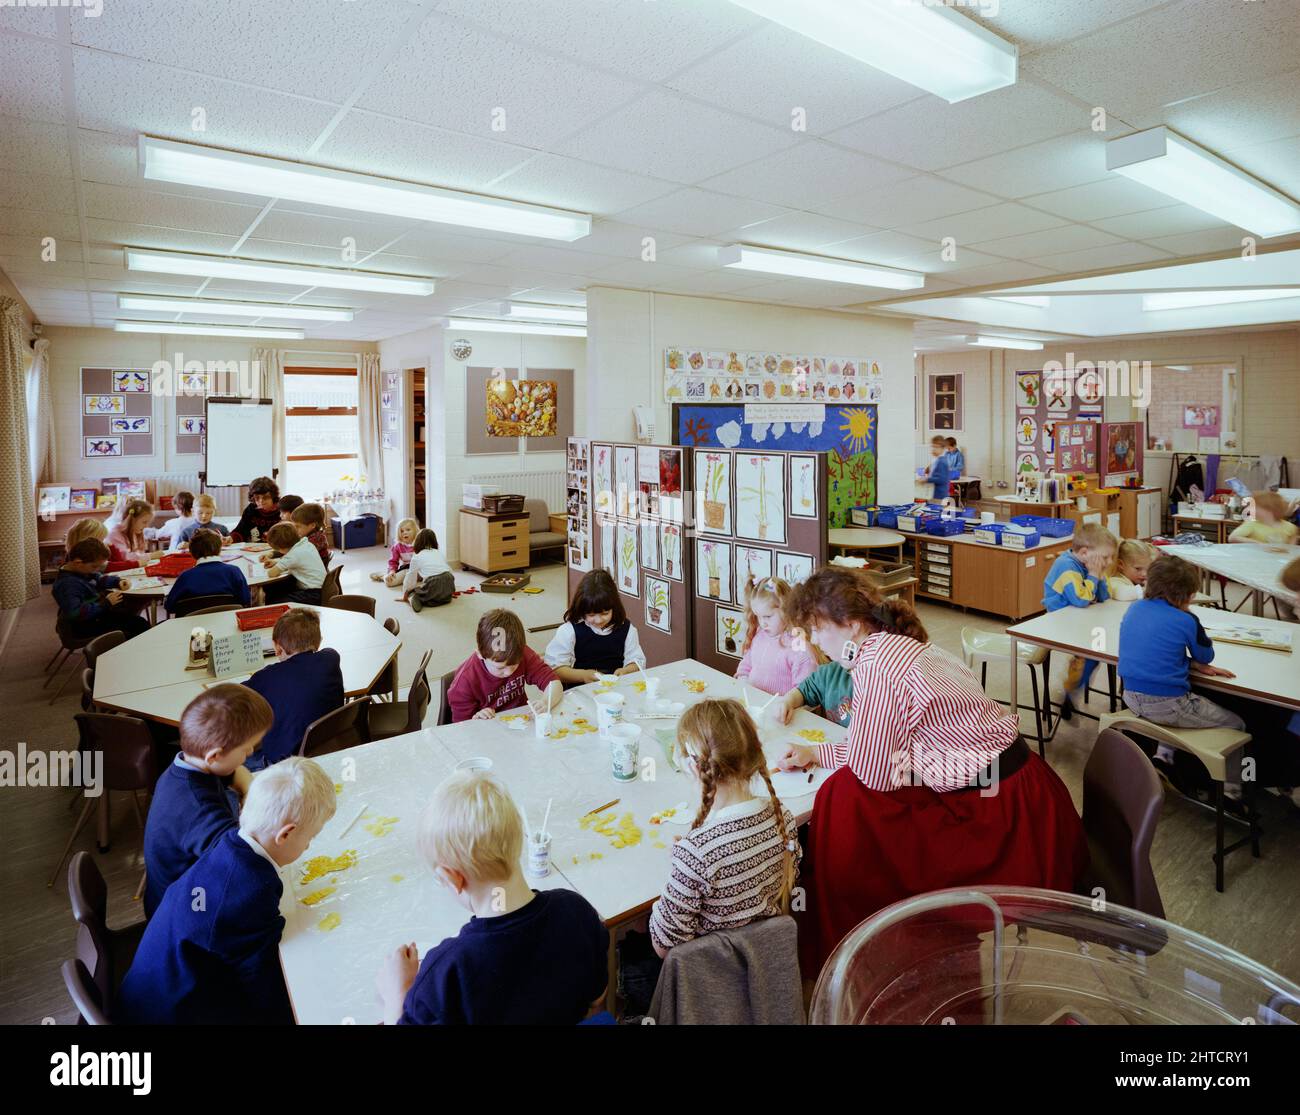 Whingate Primary School, Whingate Road, Leeds, 09/03/1989. Kinder, die an Tischen in einem Klassenzimmer der Whingate Primary School, Leeds, arbeiten. Laings Yorkshire Region Abteilung baute drei Schulen als kombinierte &#XA3;4m Vertrag für Leeds City Council. Whitecote, Harehills und Whingate-Grundschulen wurden alle zwischen September 1987 und September 1988 gebaut. Alle drei waren aus traditionellem Ziegelstein und Blockbau mit gekachelten Dächern. Das Design folgte der gleichen Vorlage, aber Whingate war ein Spiegelbild der beiden anderen. Stockfoto